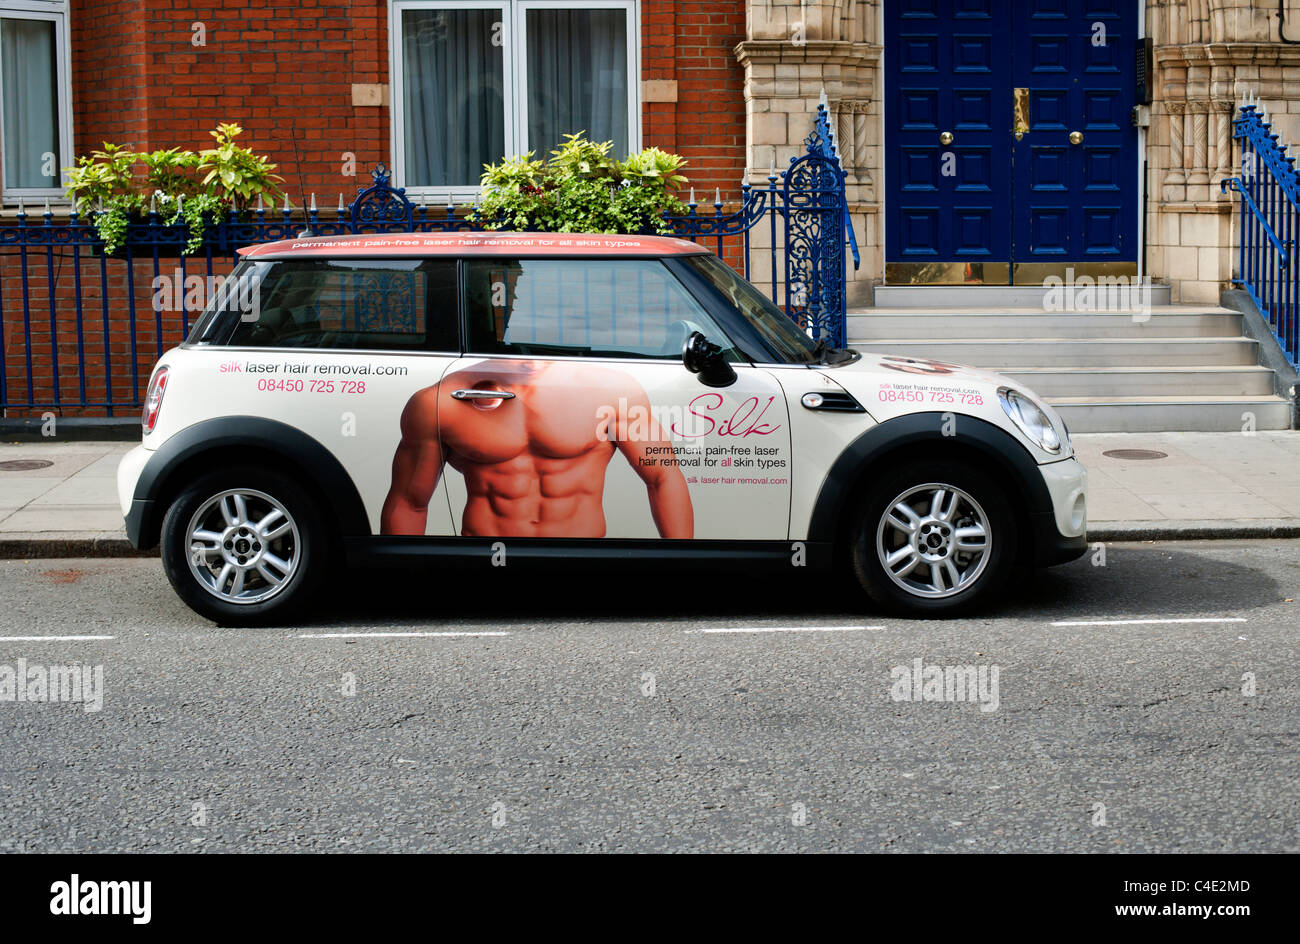 Nuova mini pubblicità Depilazione laser clinic, parcheggiato in Bickenhall Street, Marylebone, London, England, Regno Unito, Europa Foto Stock